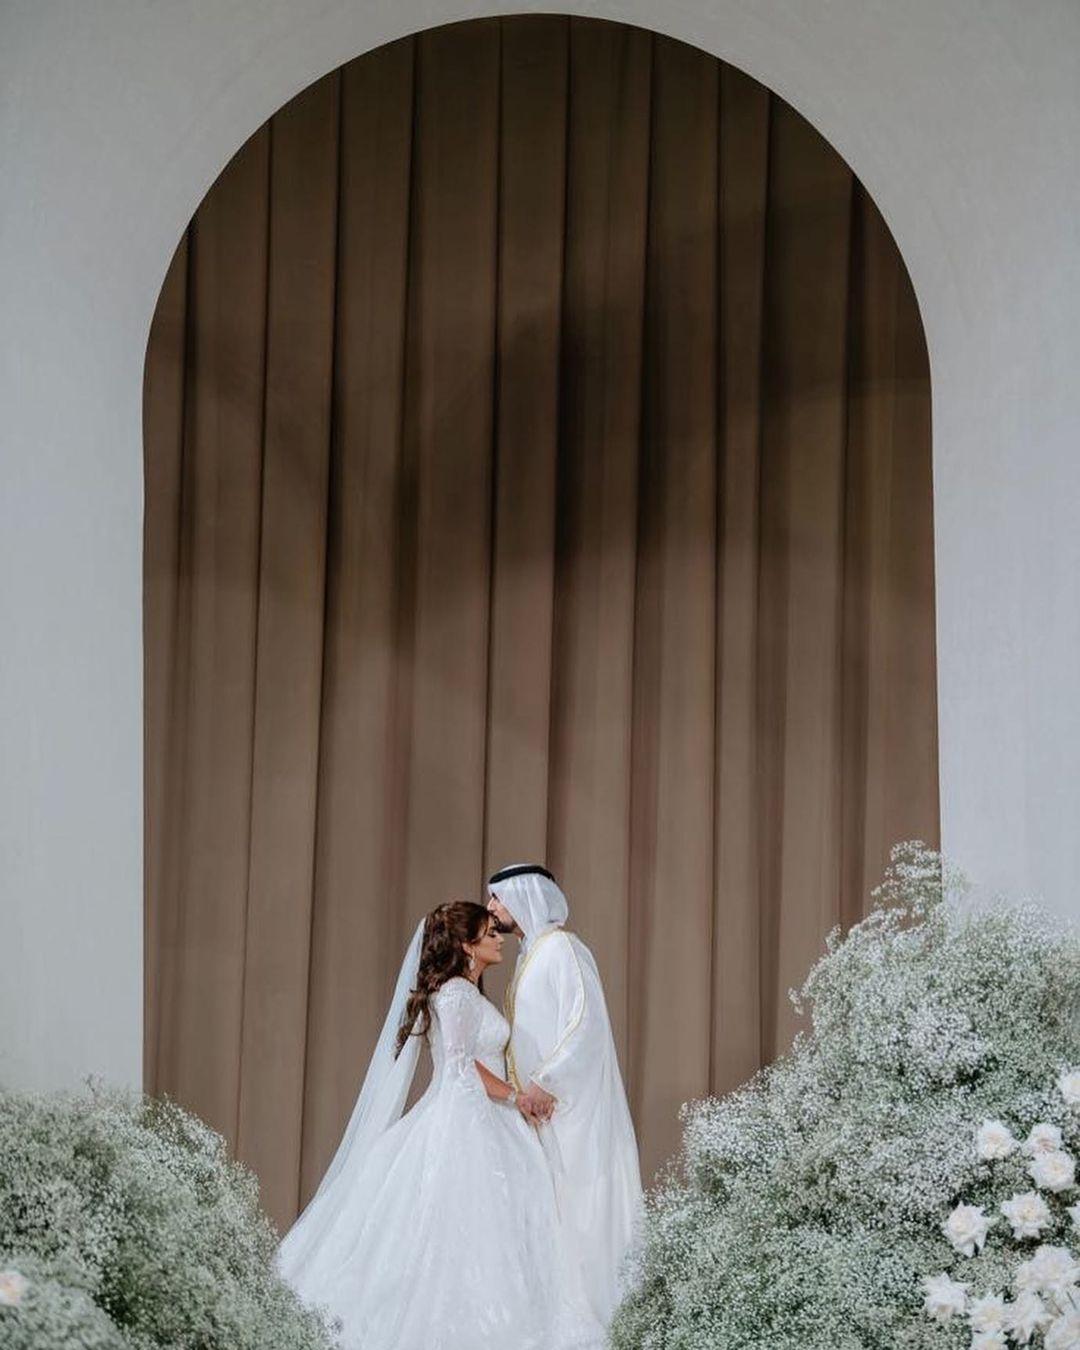 صور جديدة من حفل زفاف الشيخة مهرة بنت محمد بن راشد آل مكتوم 